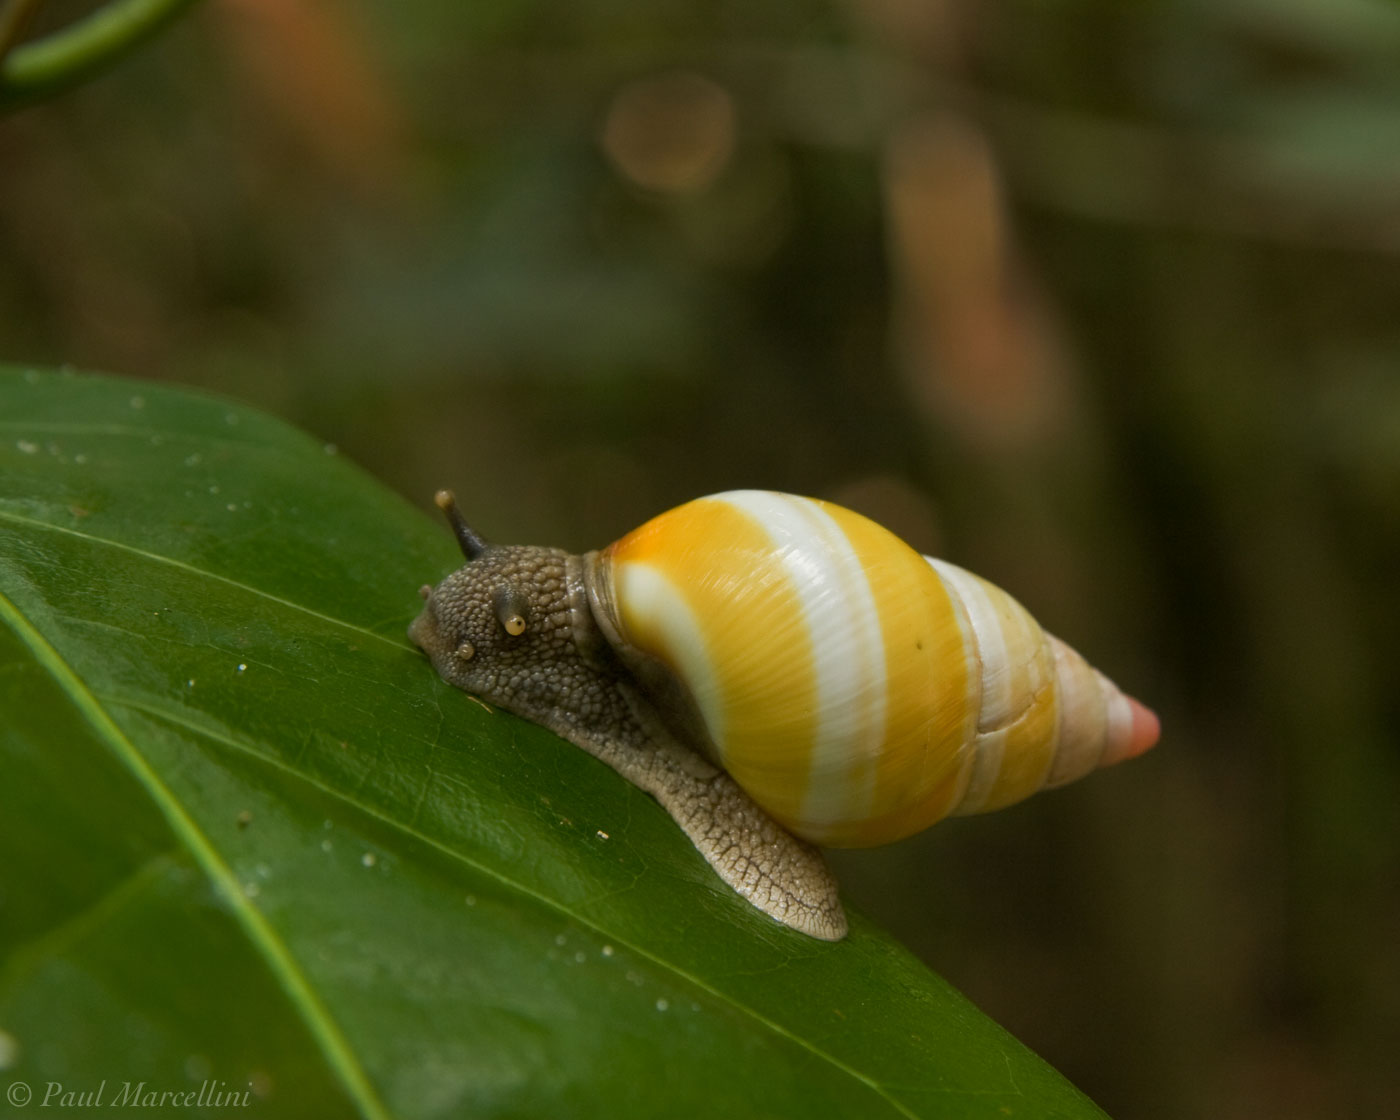 One of the 60 color forms of the beautfiul Liguus Tree Snails (Liguus fasciatus).